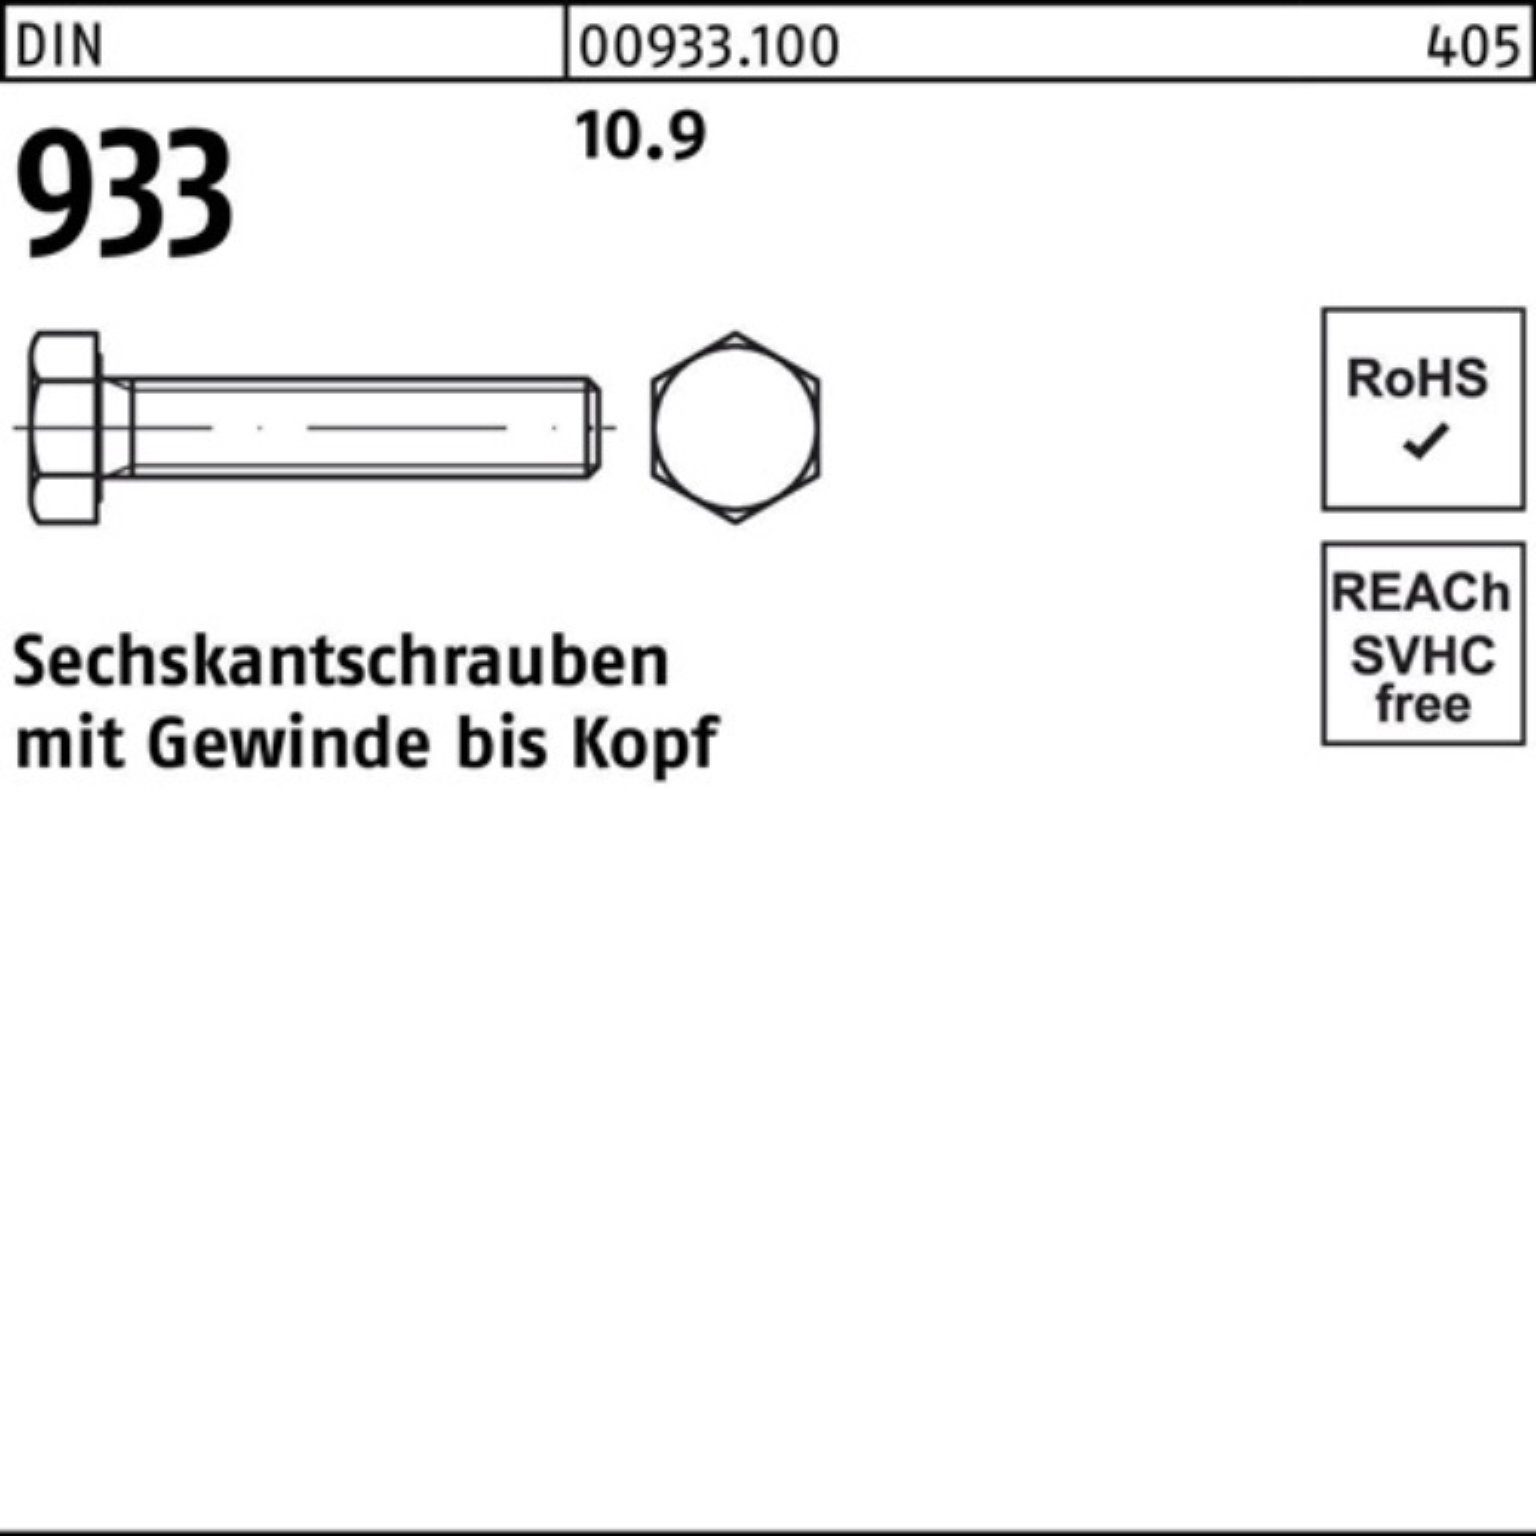 933 100er DIN Pack 933 Reyher M12x Stück 90 10.9 Sechskantschraube 50 VG Sechskantschraube DIN